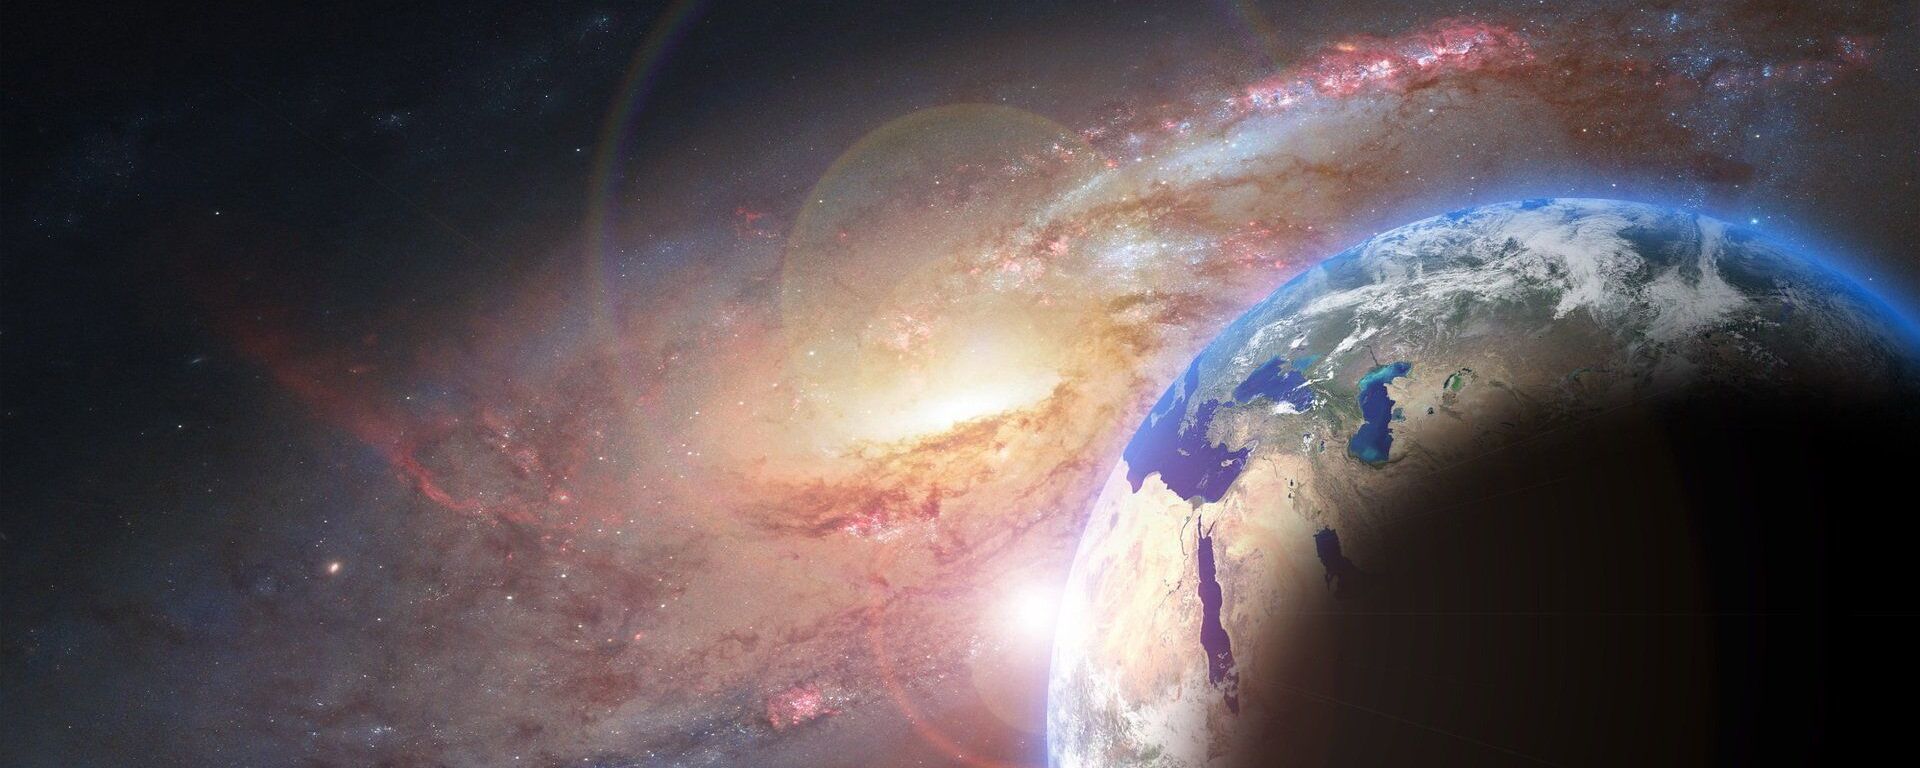 كوكب الأرض إلى جانب مجرة في مشهد خيالي  - سبوتنيك عربي, 1920, 30.08.2021